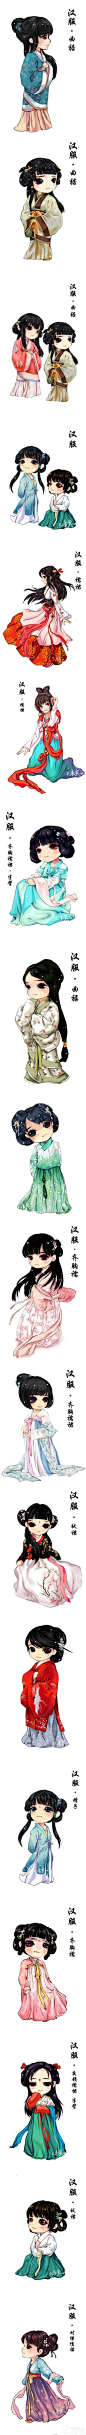 看看中国古代的汉服~太美了！！ 赶紧转走~~